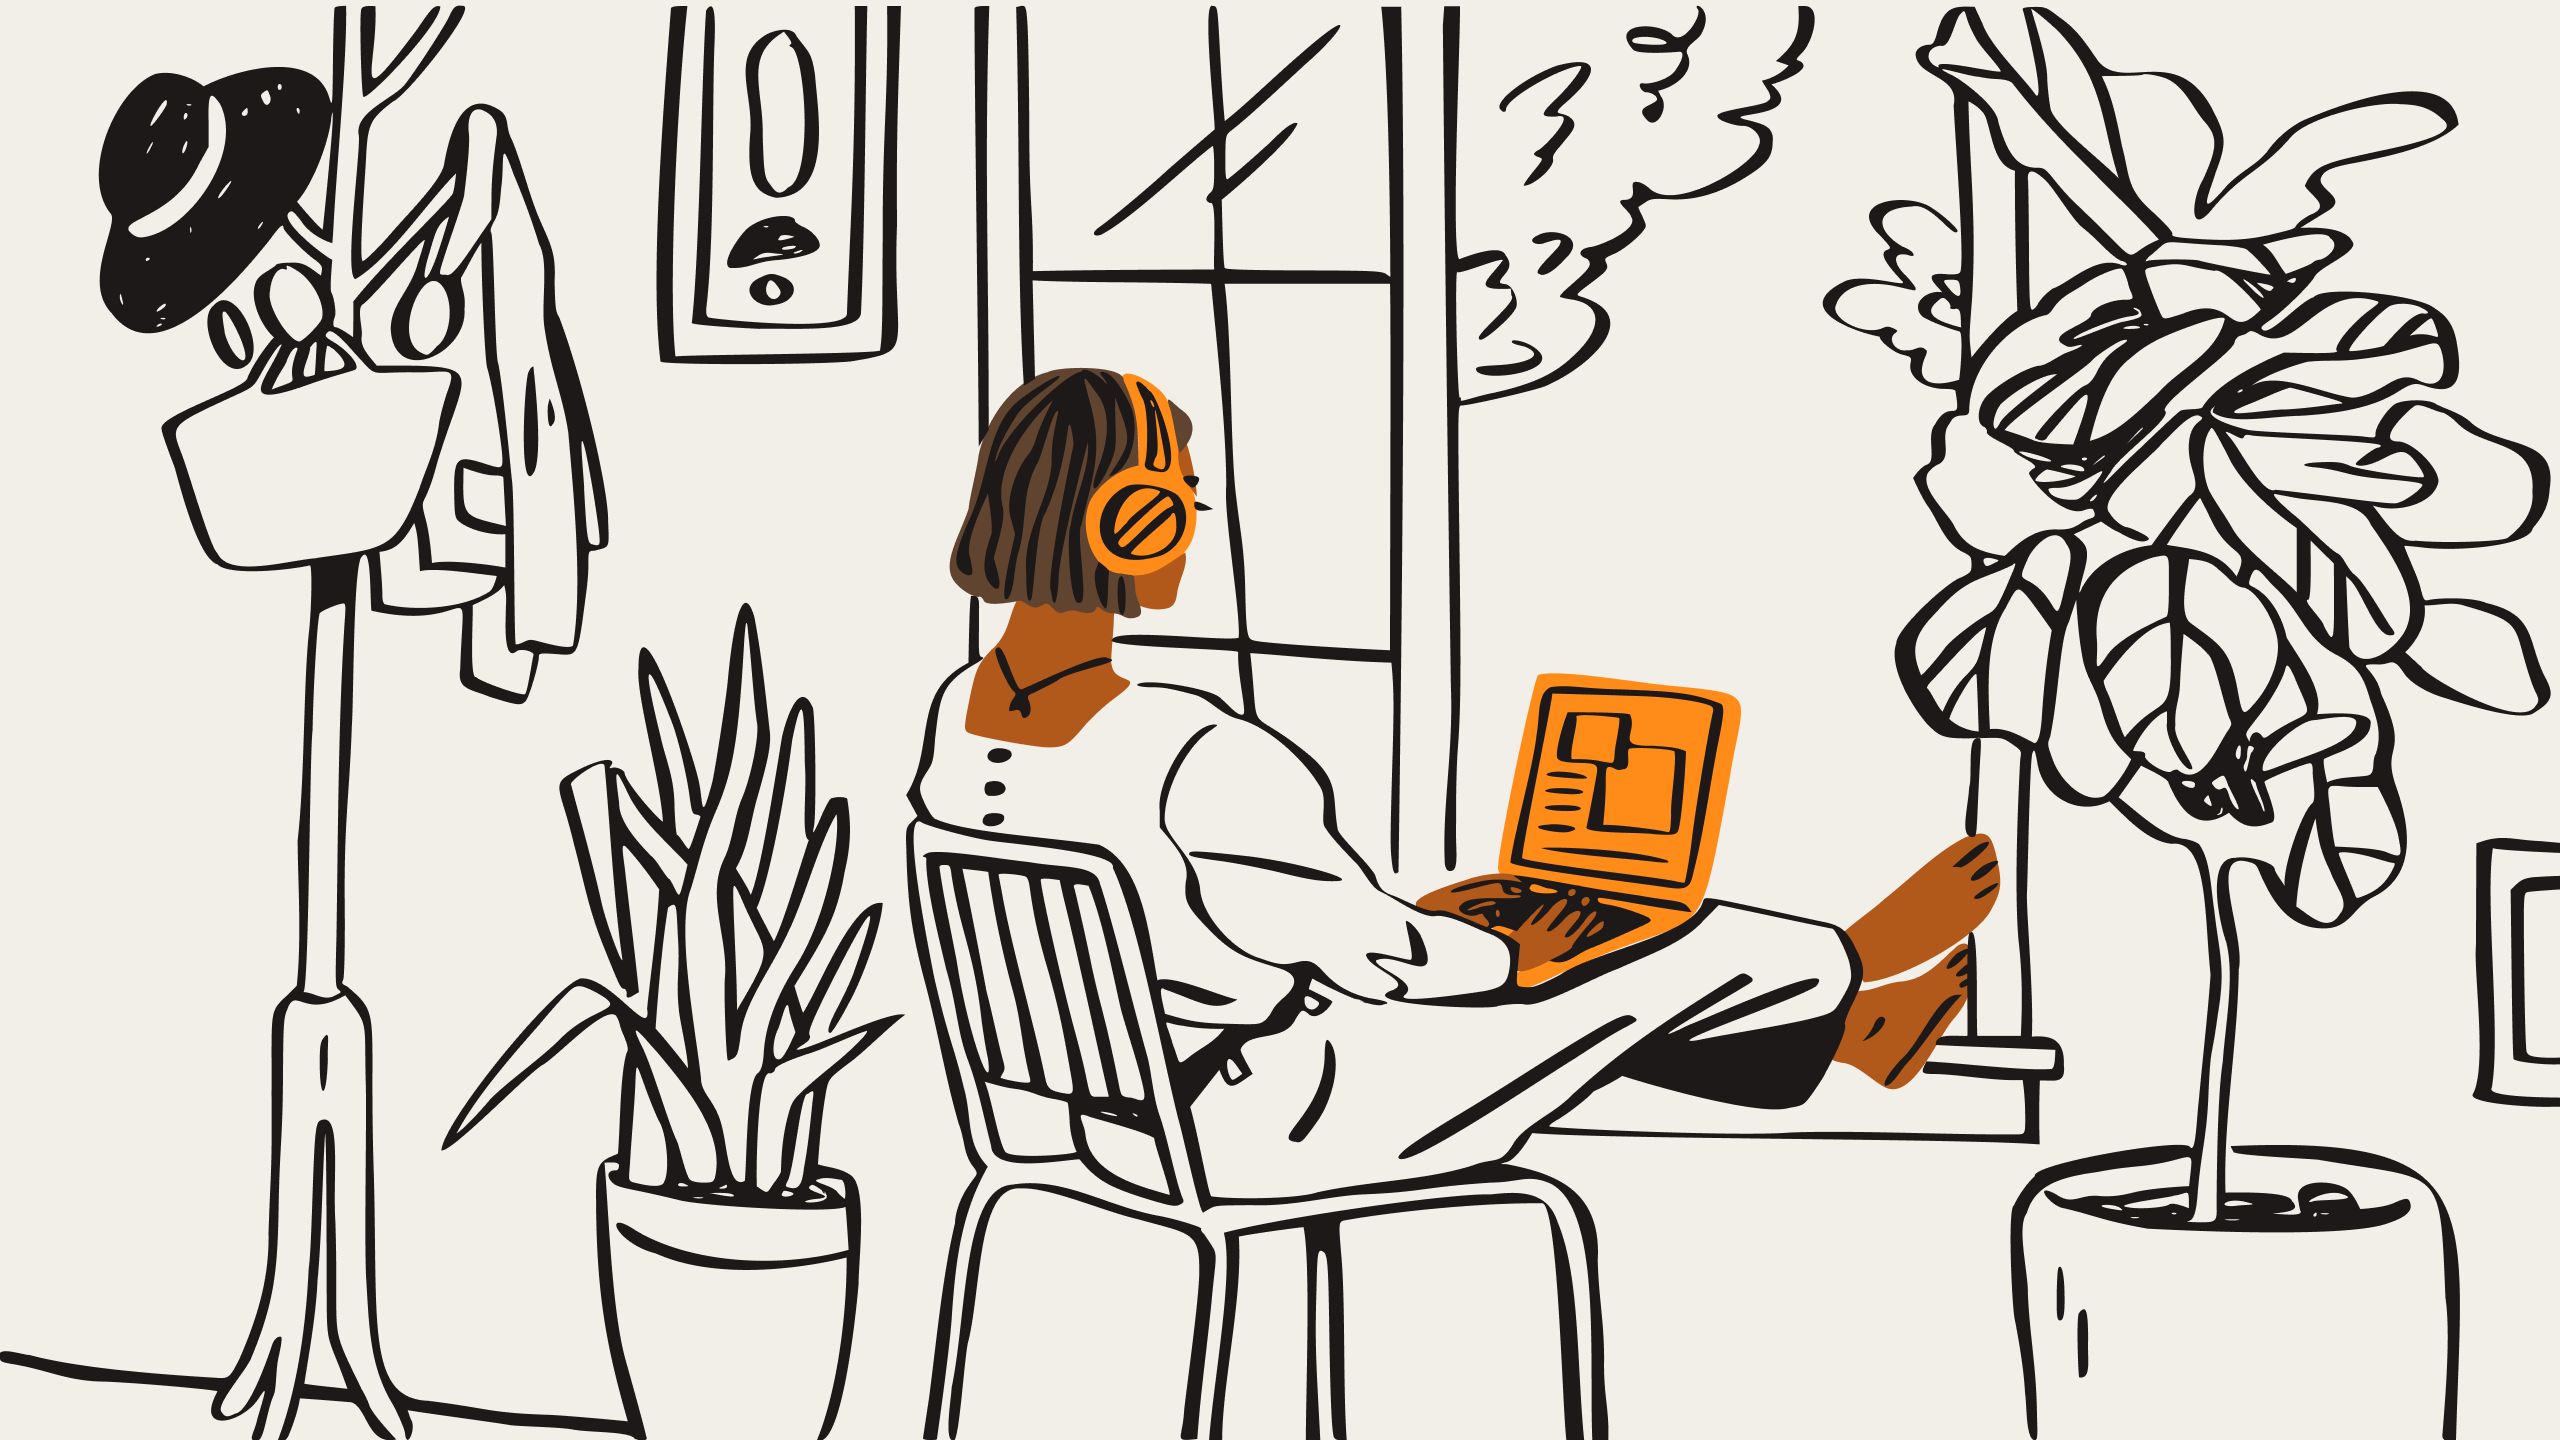 Uma ilustração de uma pessoa usando fones de ouvido laranja, sentada em uma cadeira, olhando para um laptop laranja